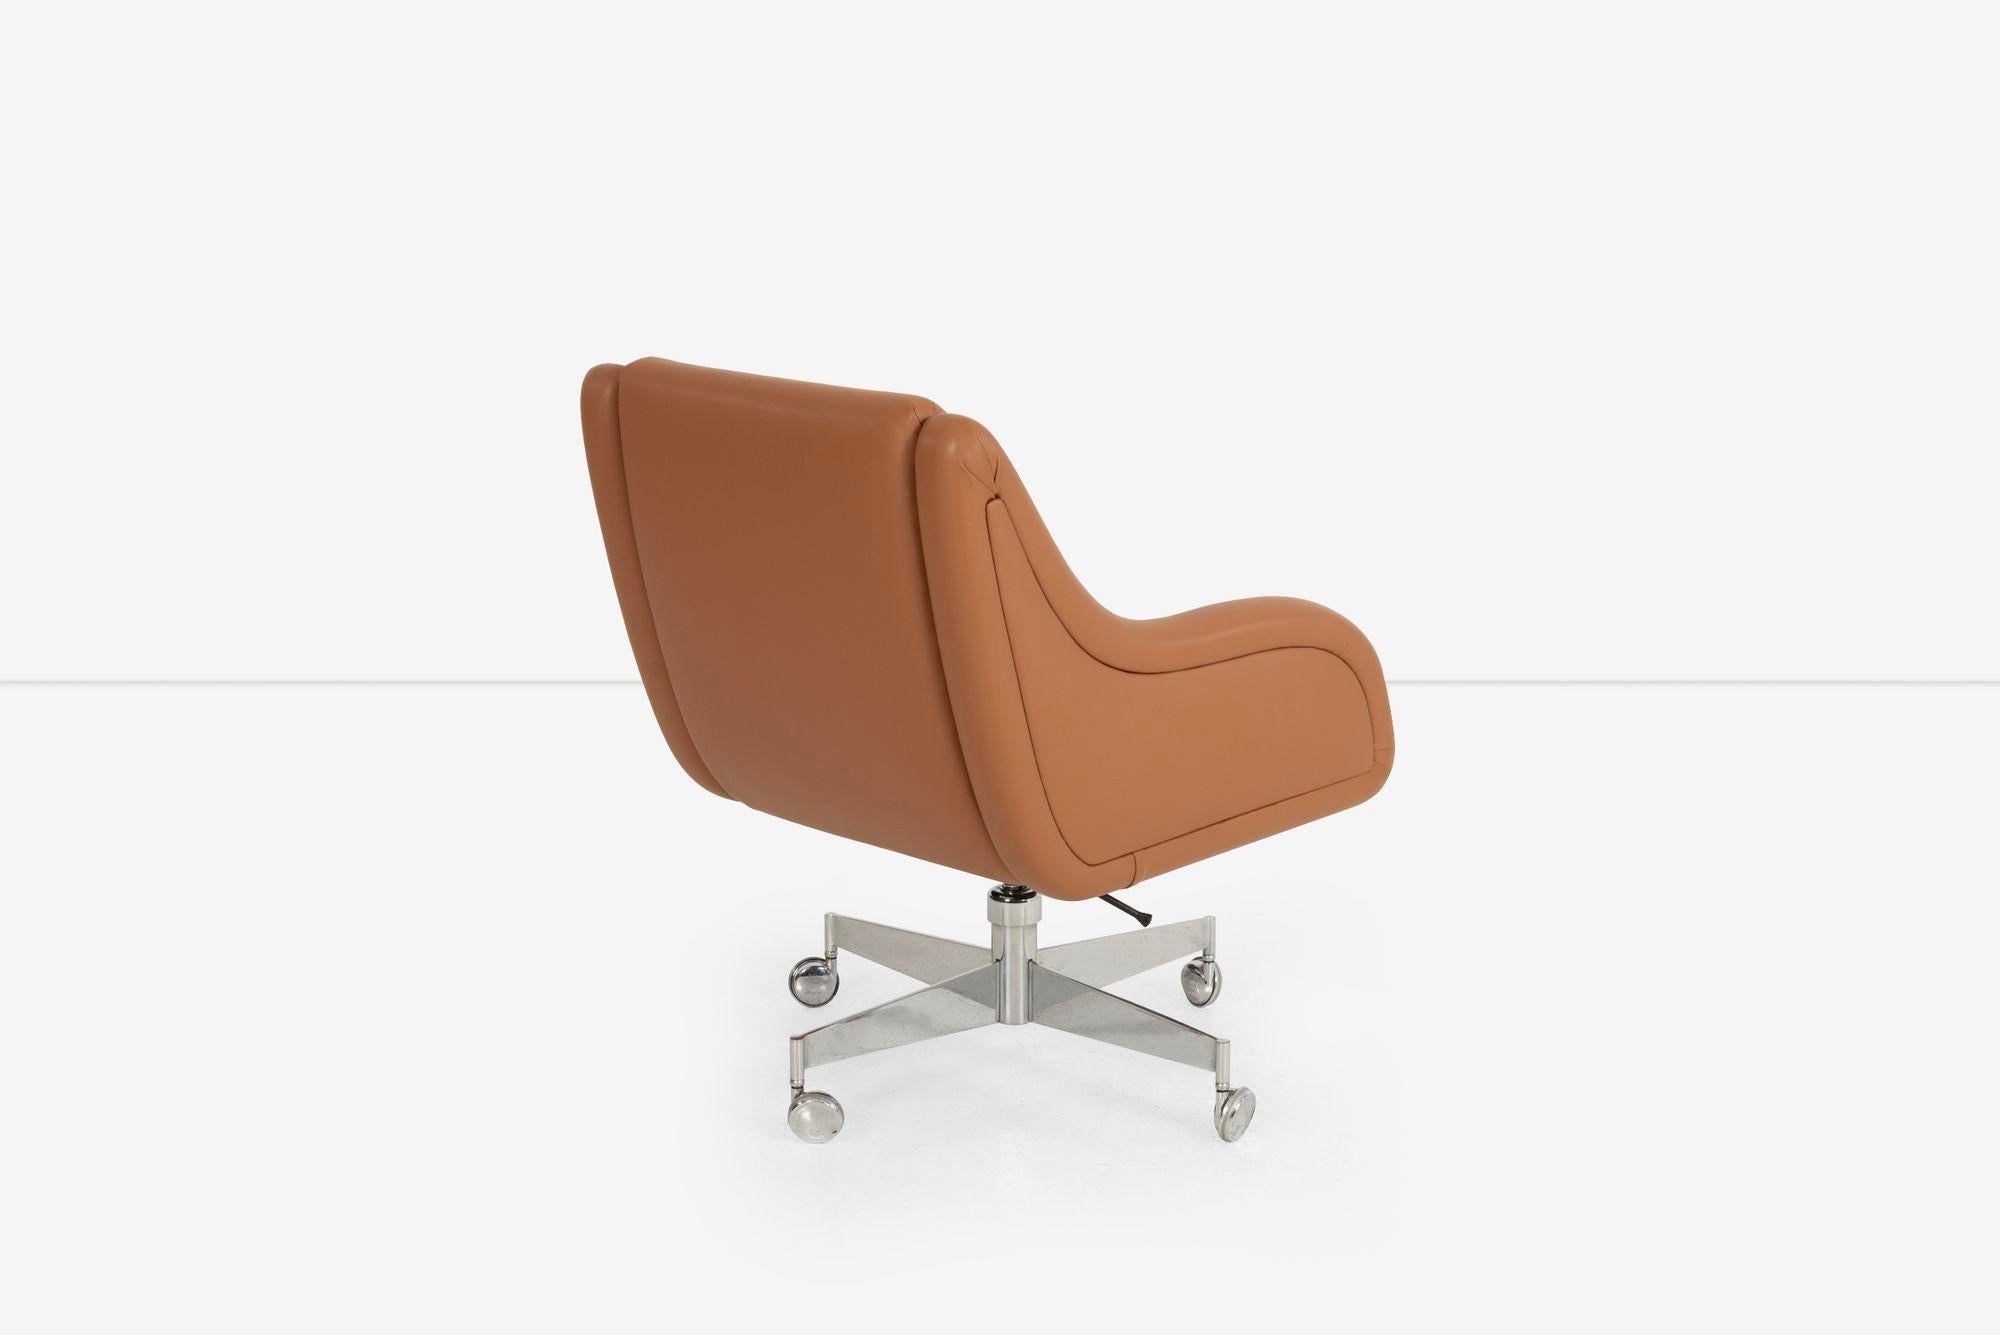 Appliqué Roger Sprunger for Dunbar Desk Chair For Sale